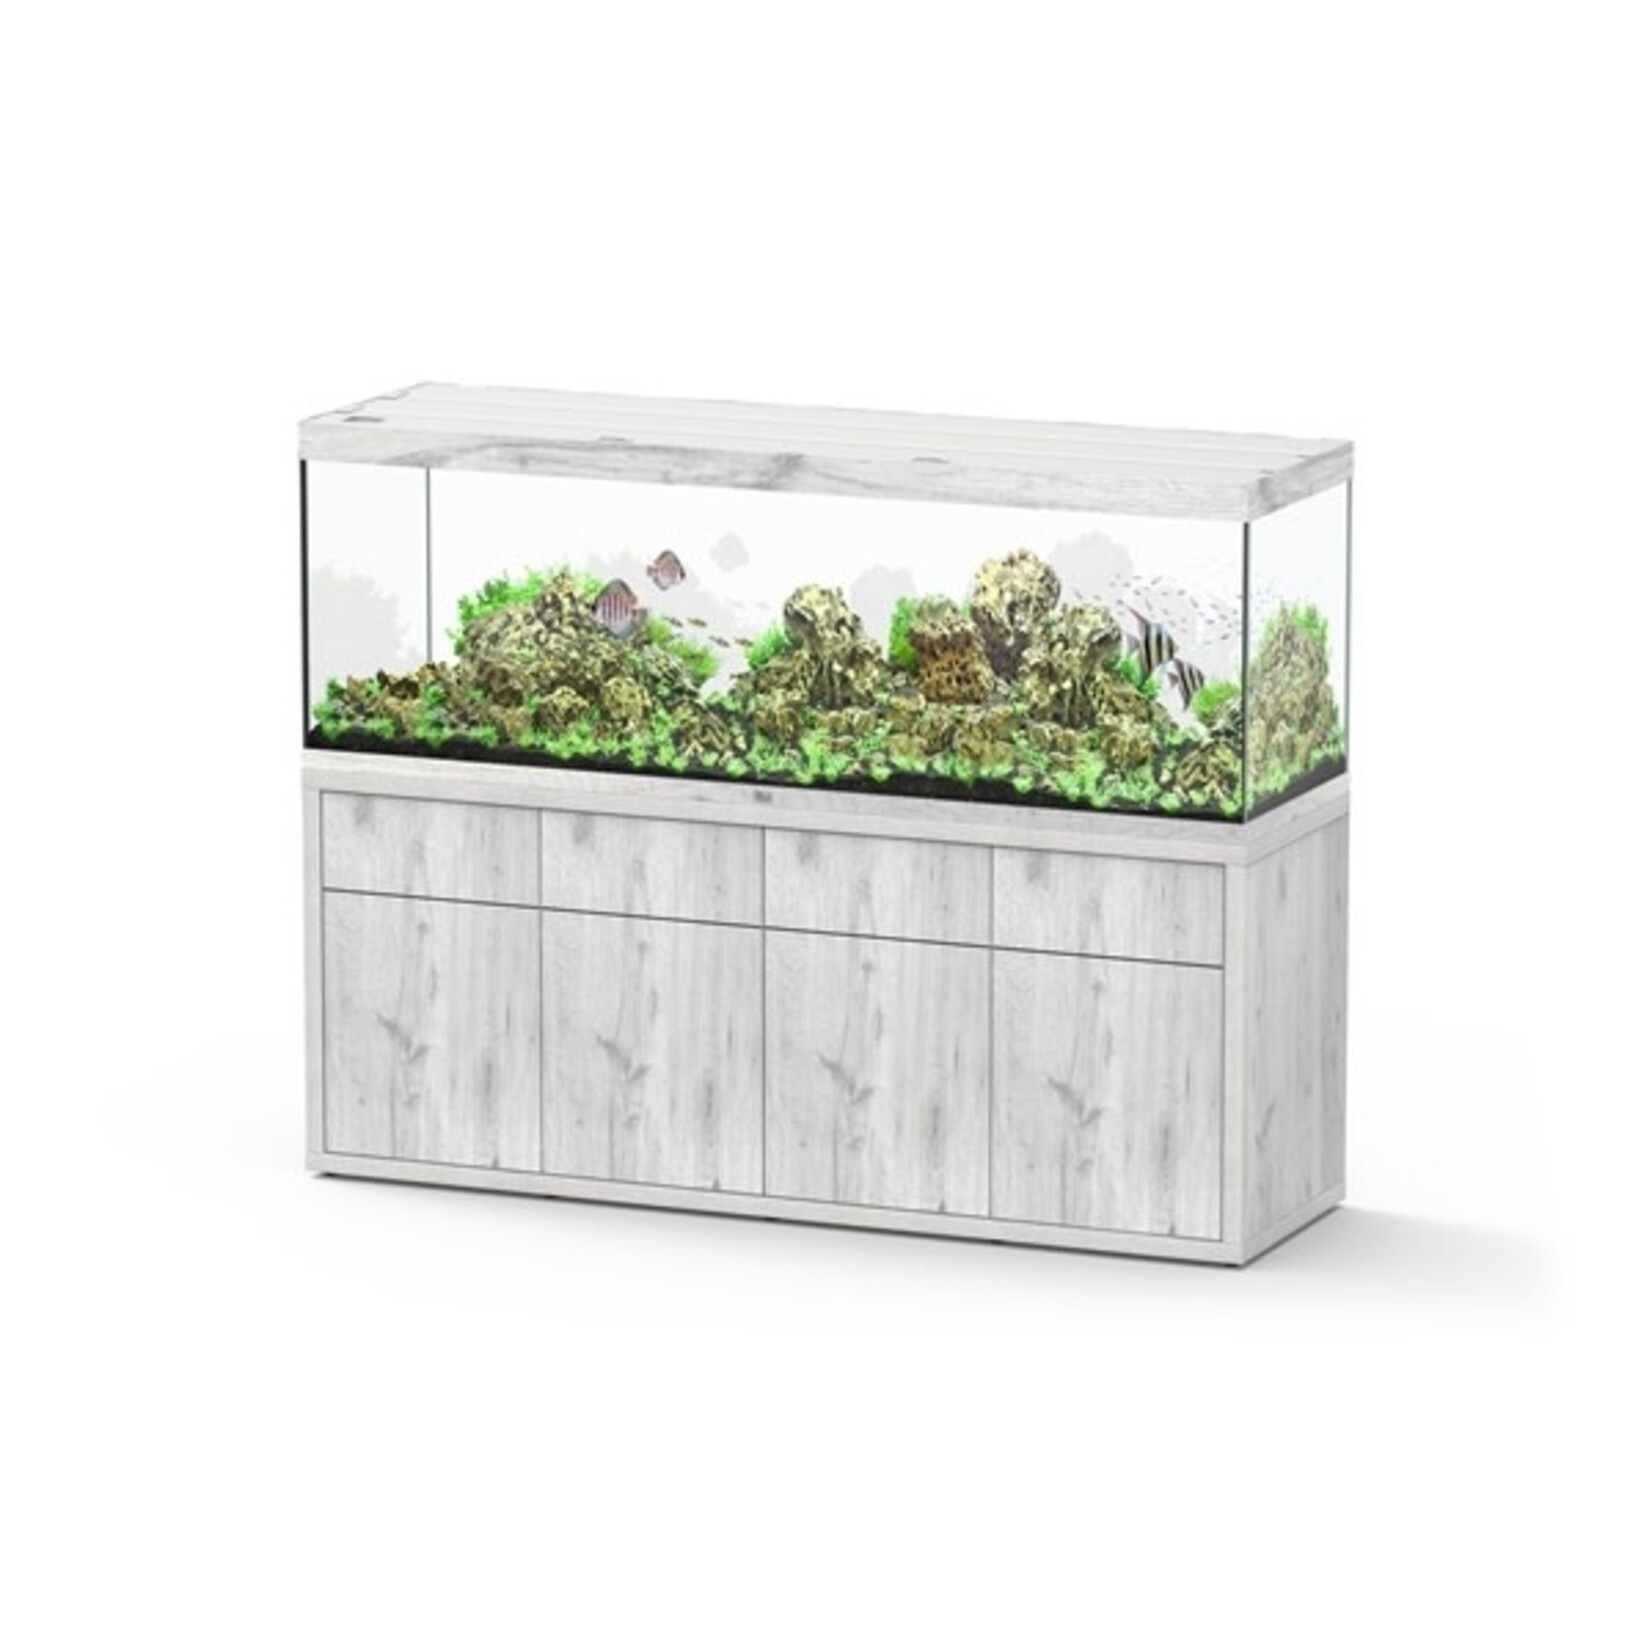 Aquatlantis Aquarium sublime 200x60 cm whitewash-088